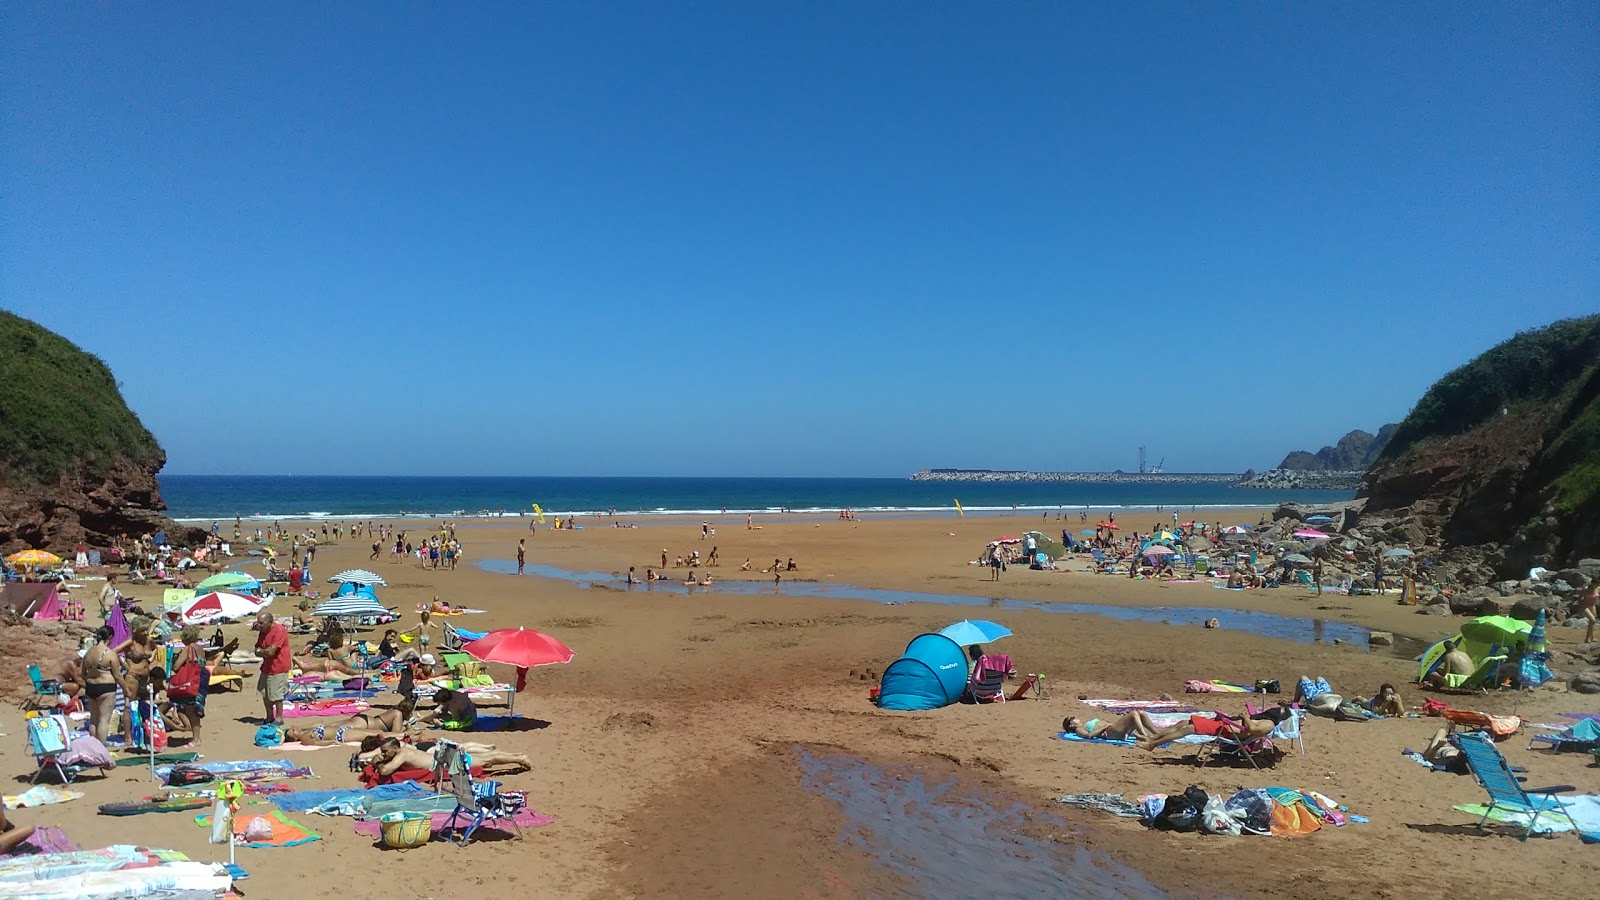 Xivares Plajı'in fotoğrafı geniş plaj ile birlikte